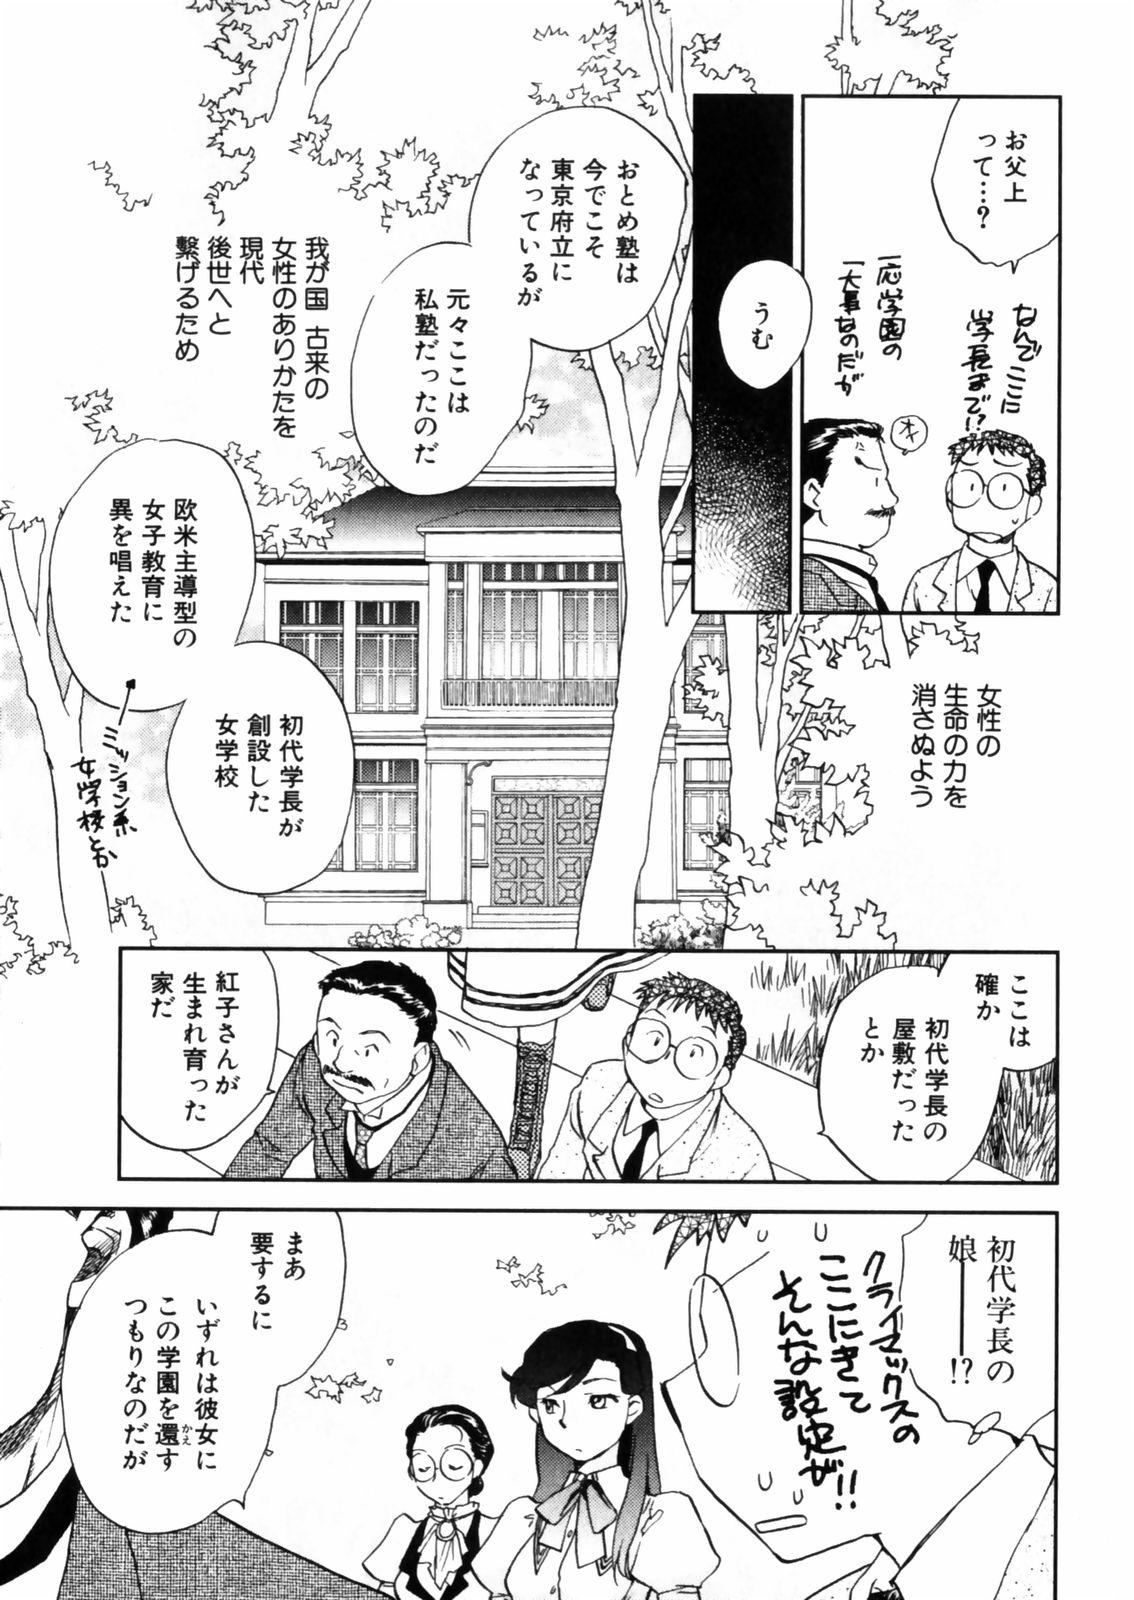 [Okano Ahiru] Hanasake ! Otome Juku (Otome Private Tutoring School) Vol.2 130